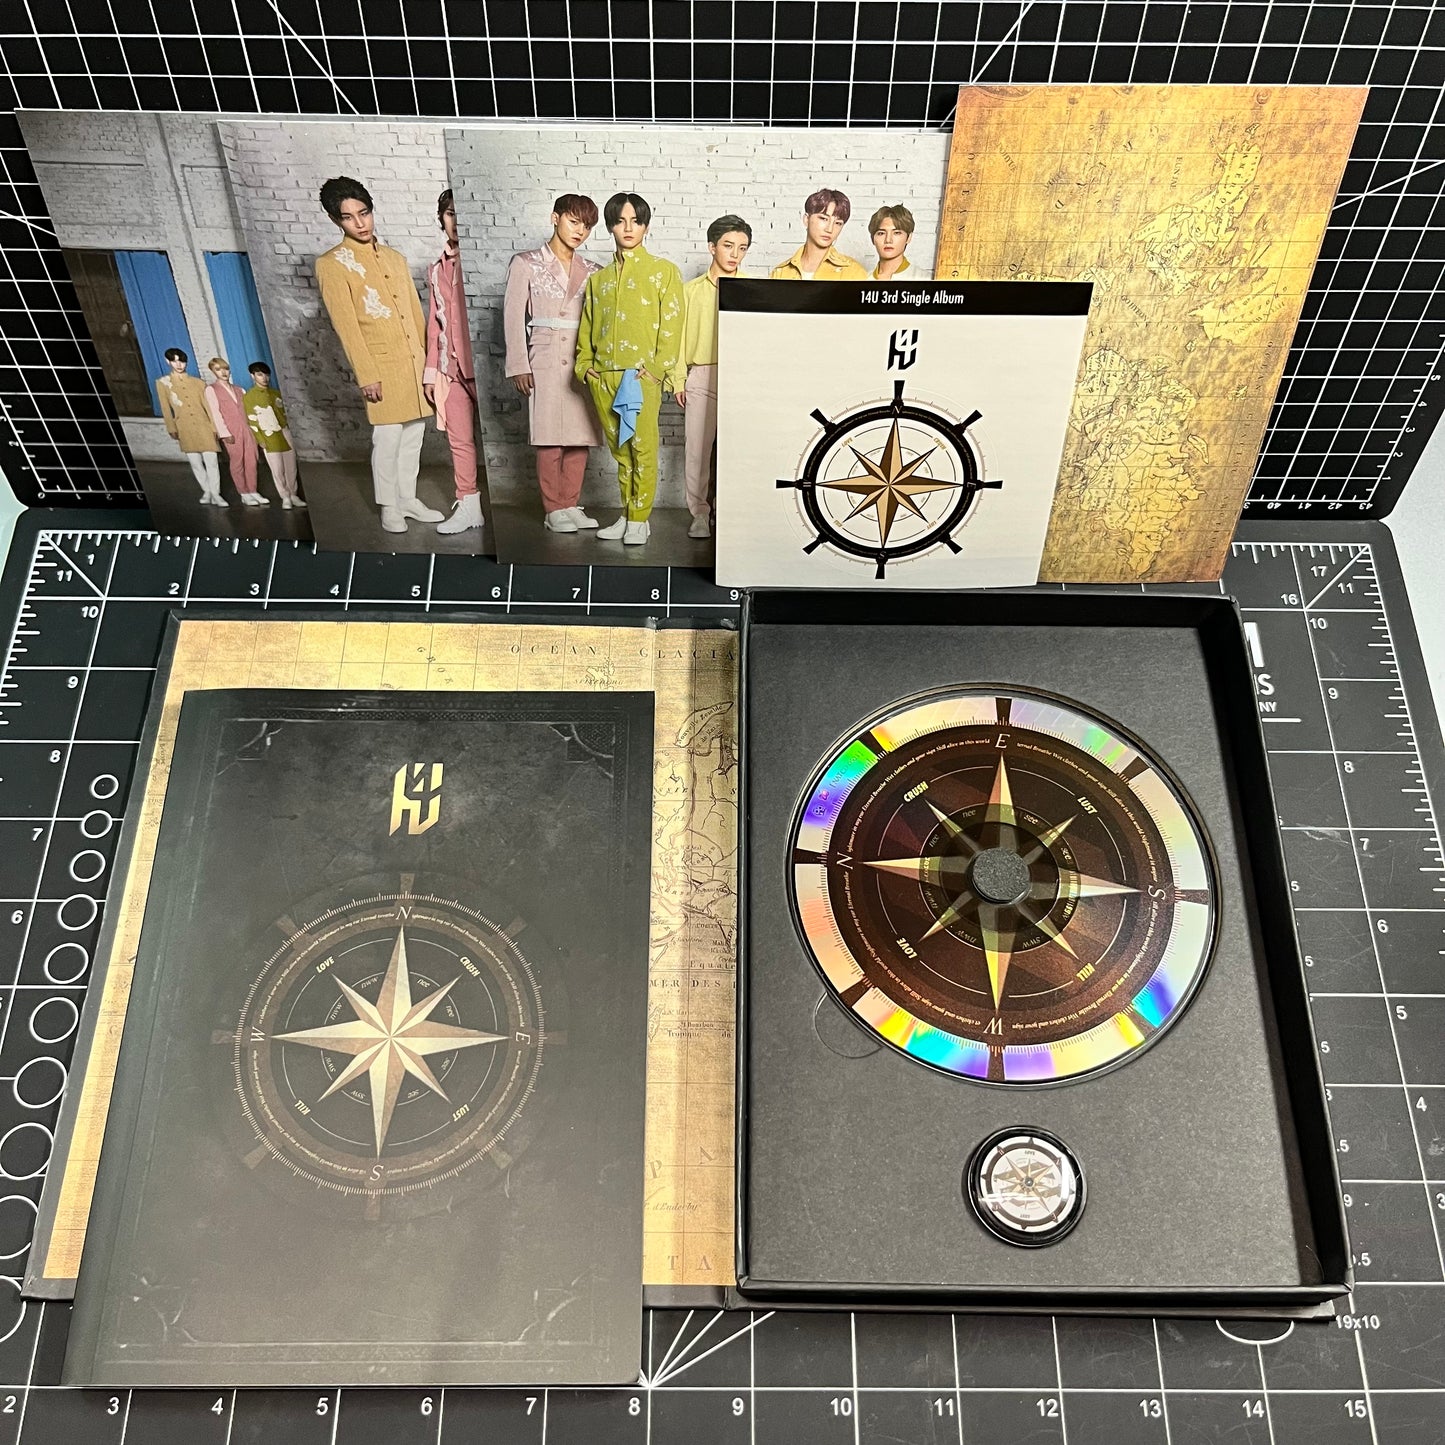 14U The 3rd Album Compass (N.E.W.S) - No Photocard